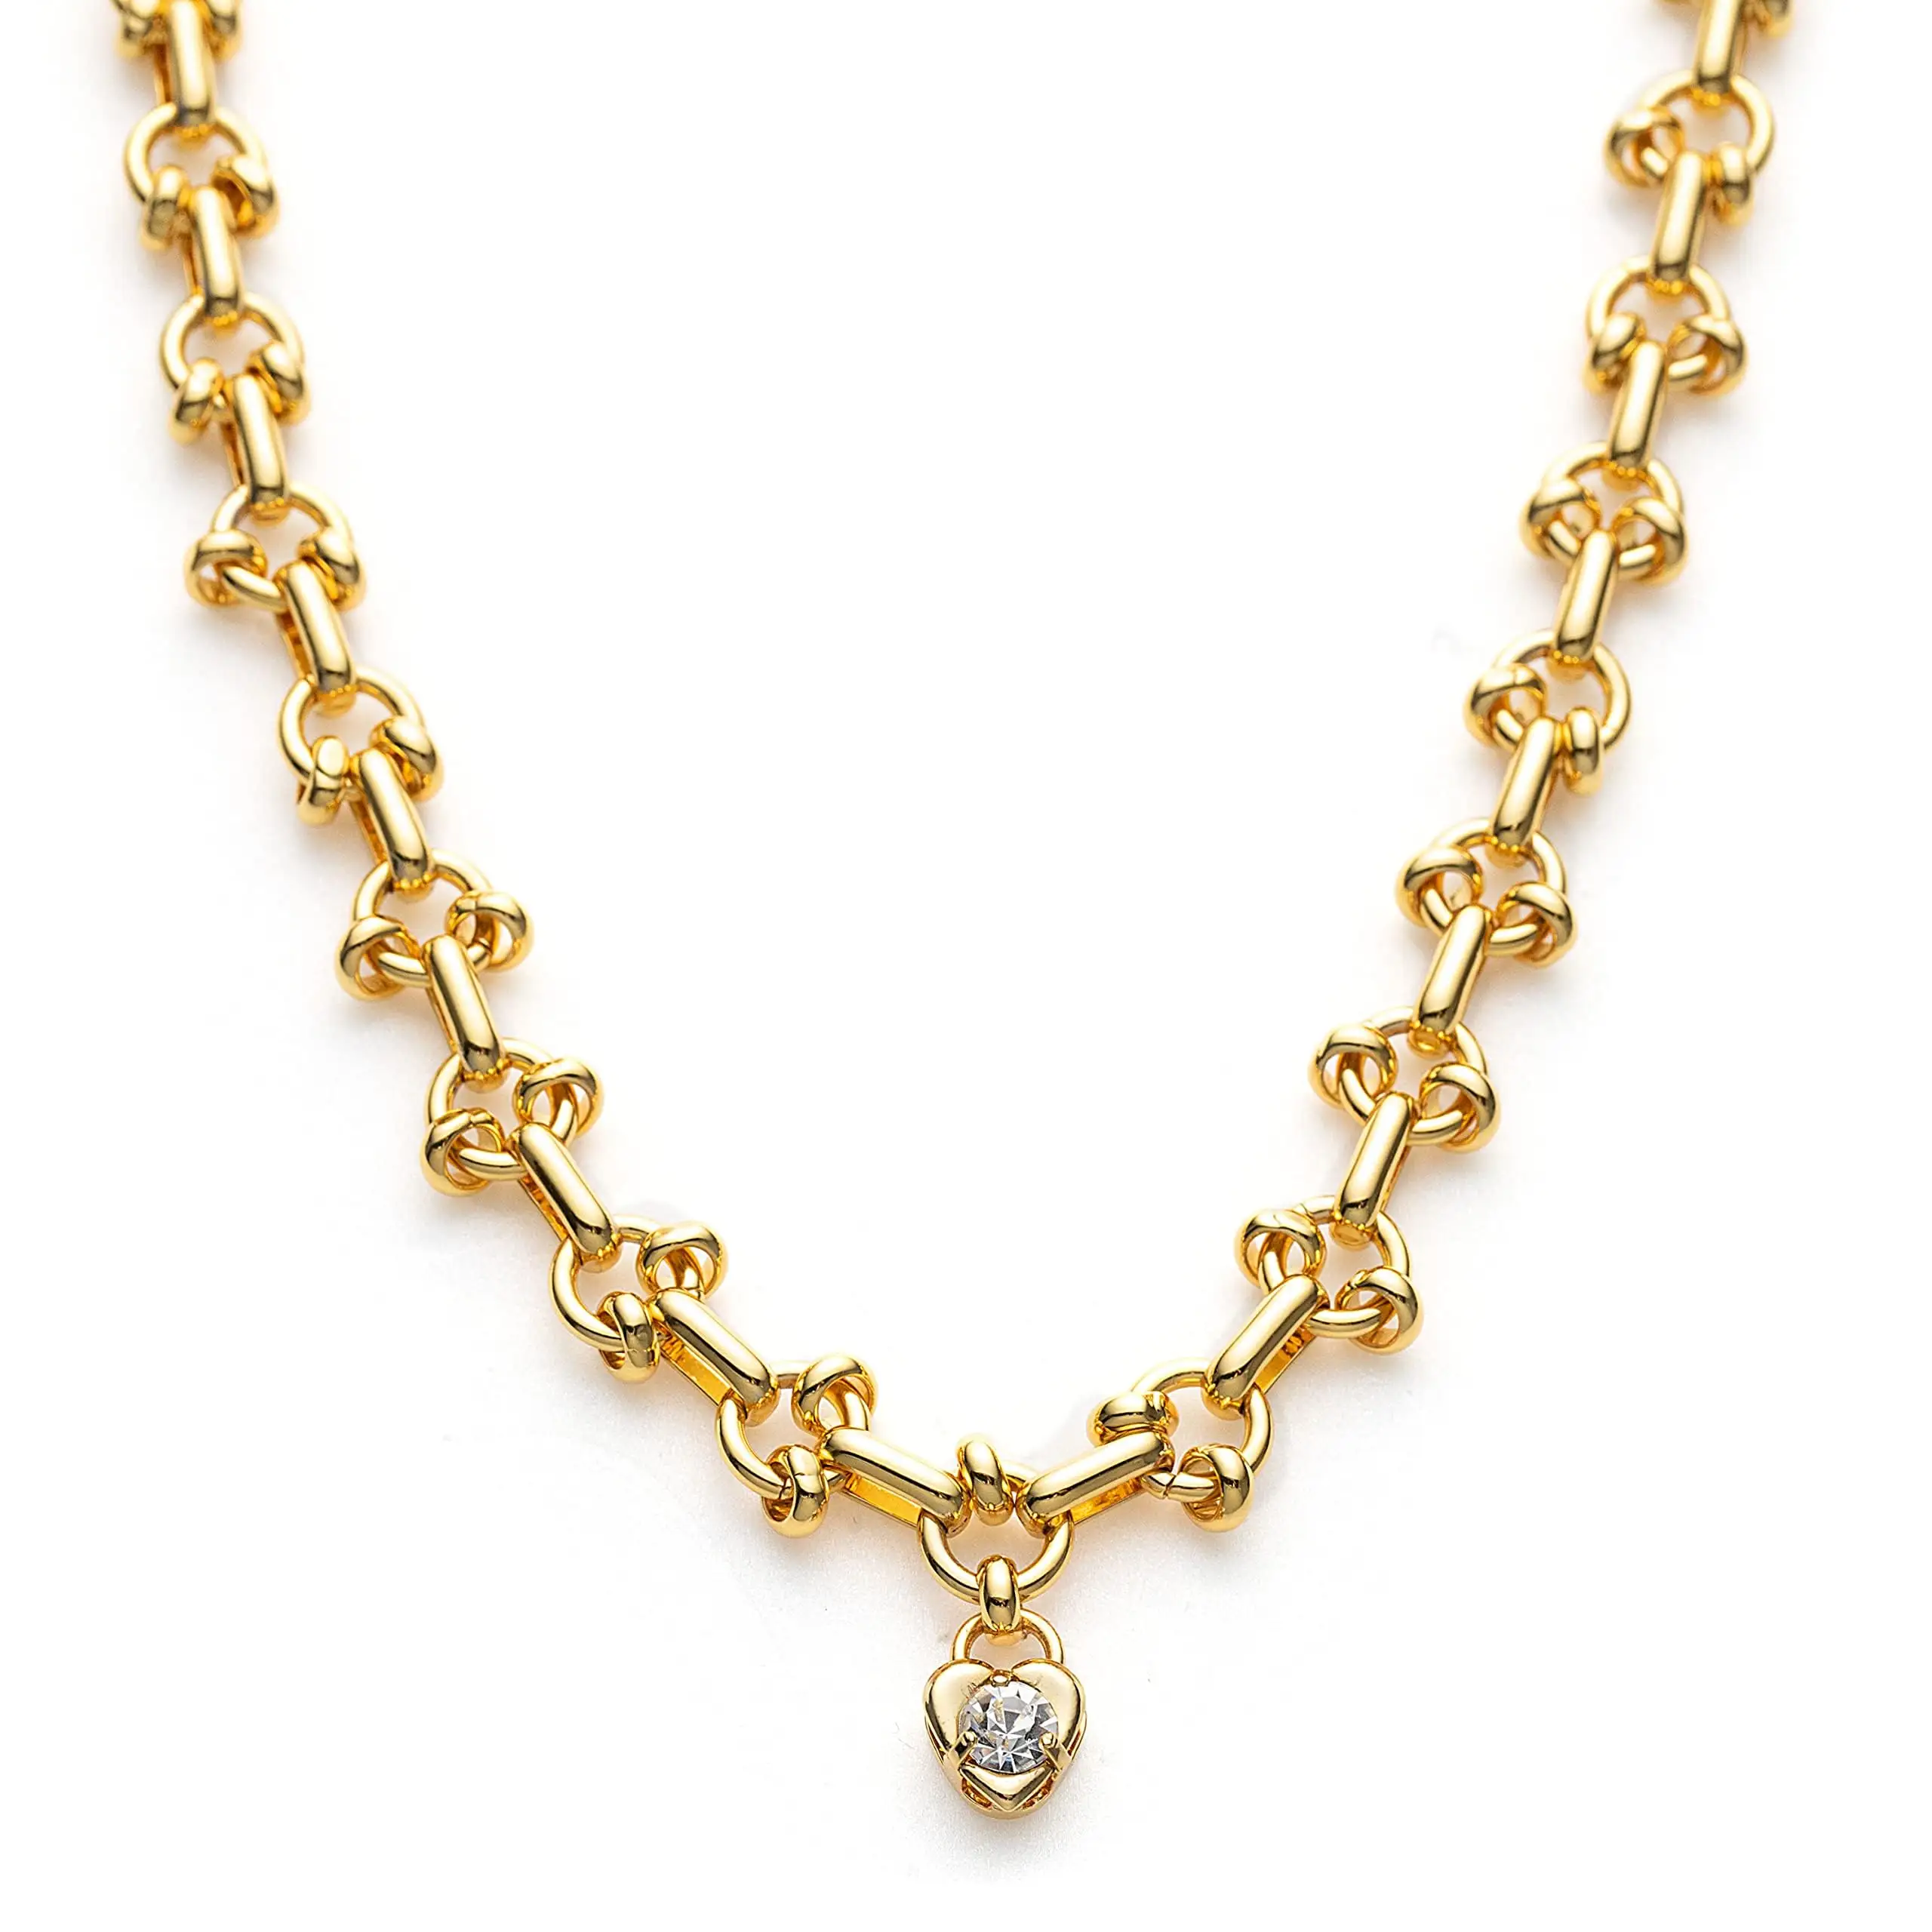 Joyería de diseño personalizado oro amarillo 18K joyería joyas de oro real gargantilla collar elegante collar de oro para mujer